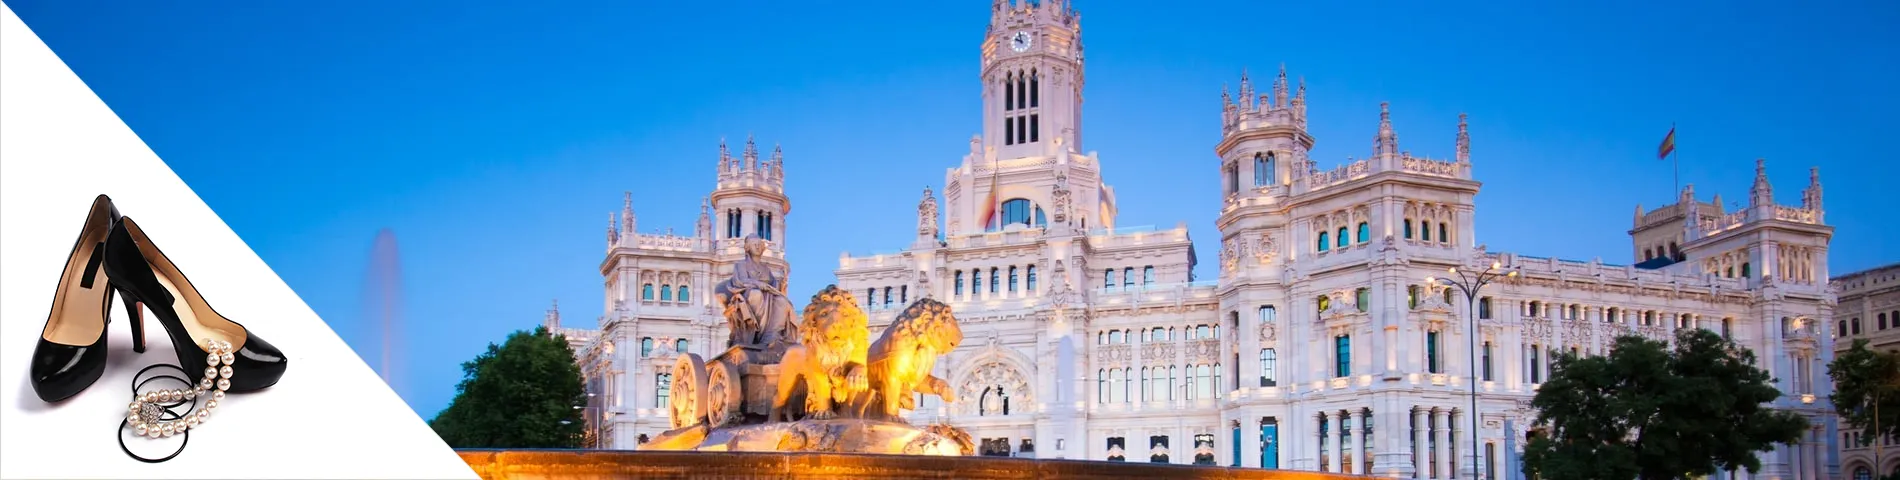 مدريد - اللغة و الموضة 